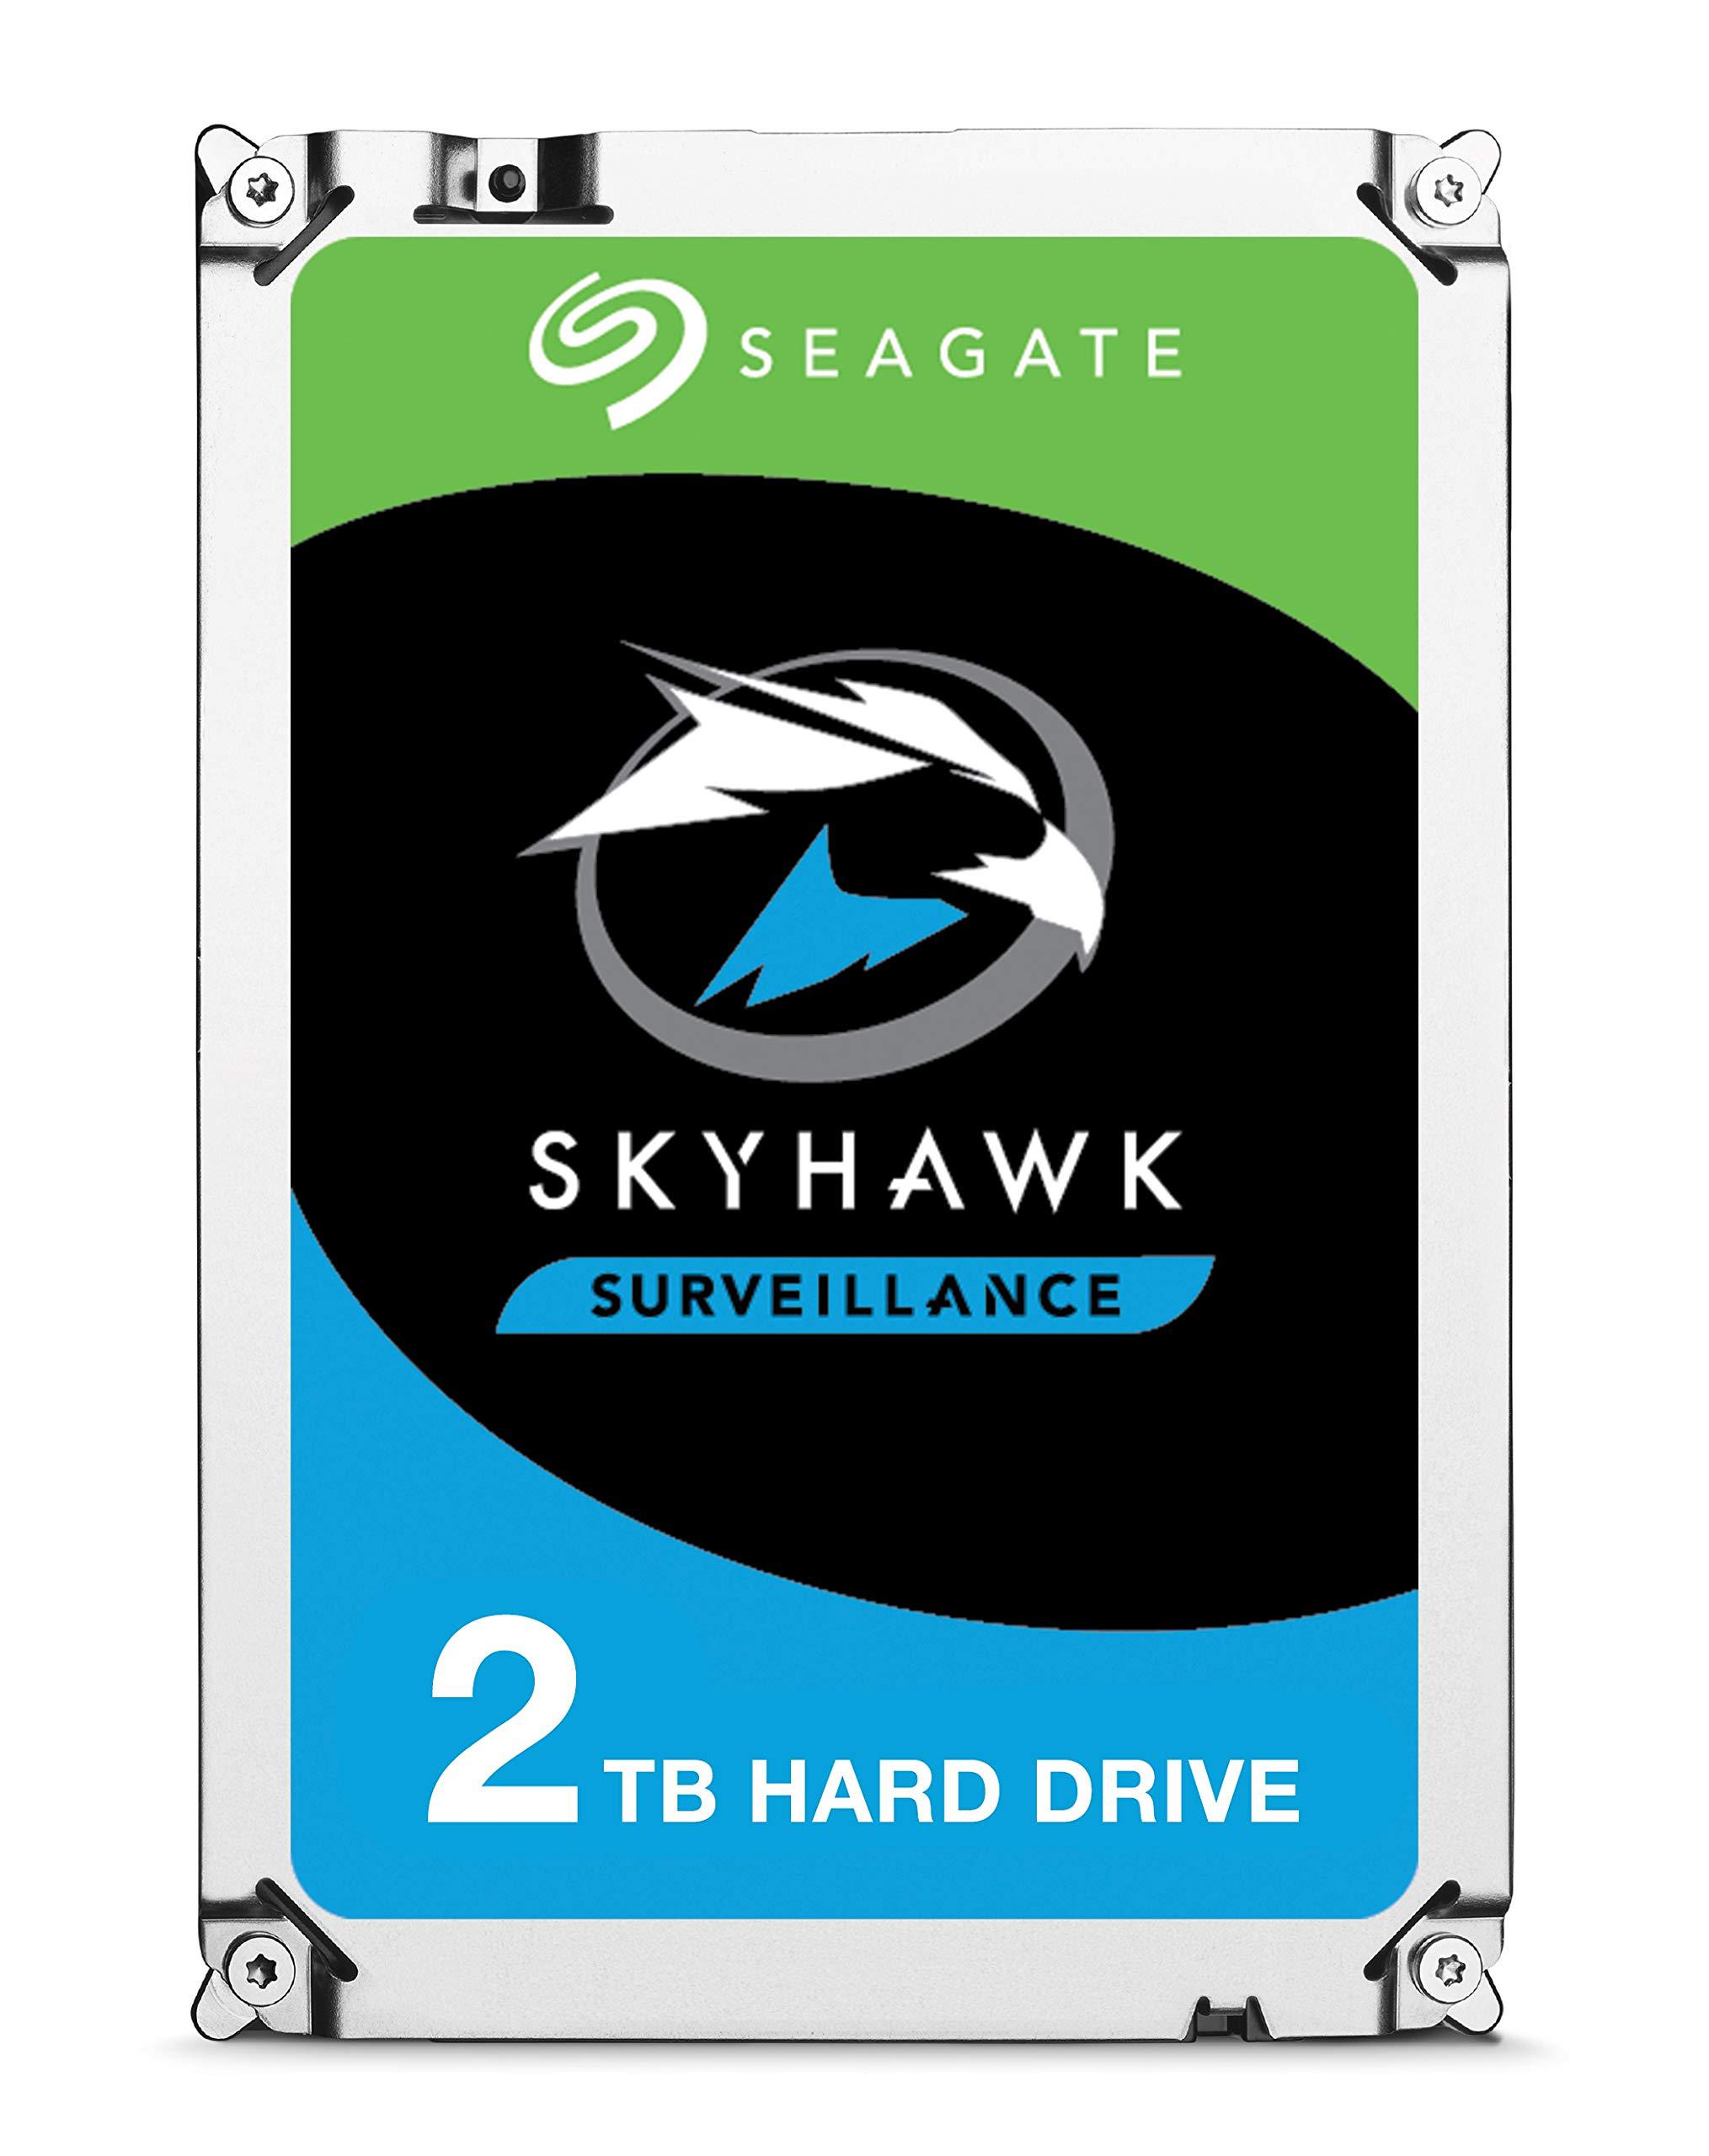 seagate st2000vx008 skyhawk hard drive